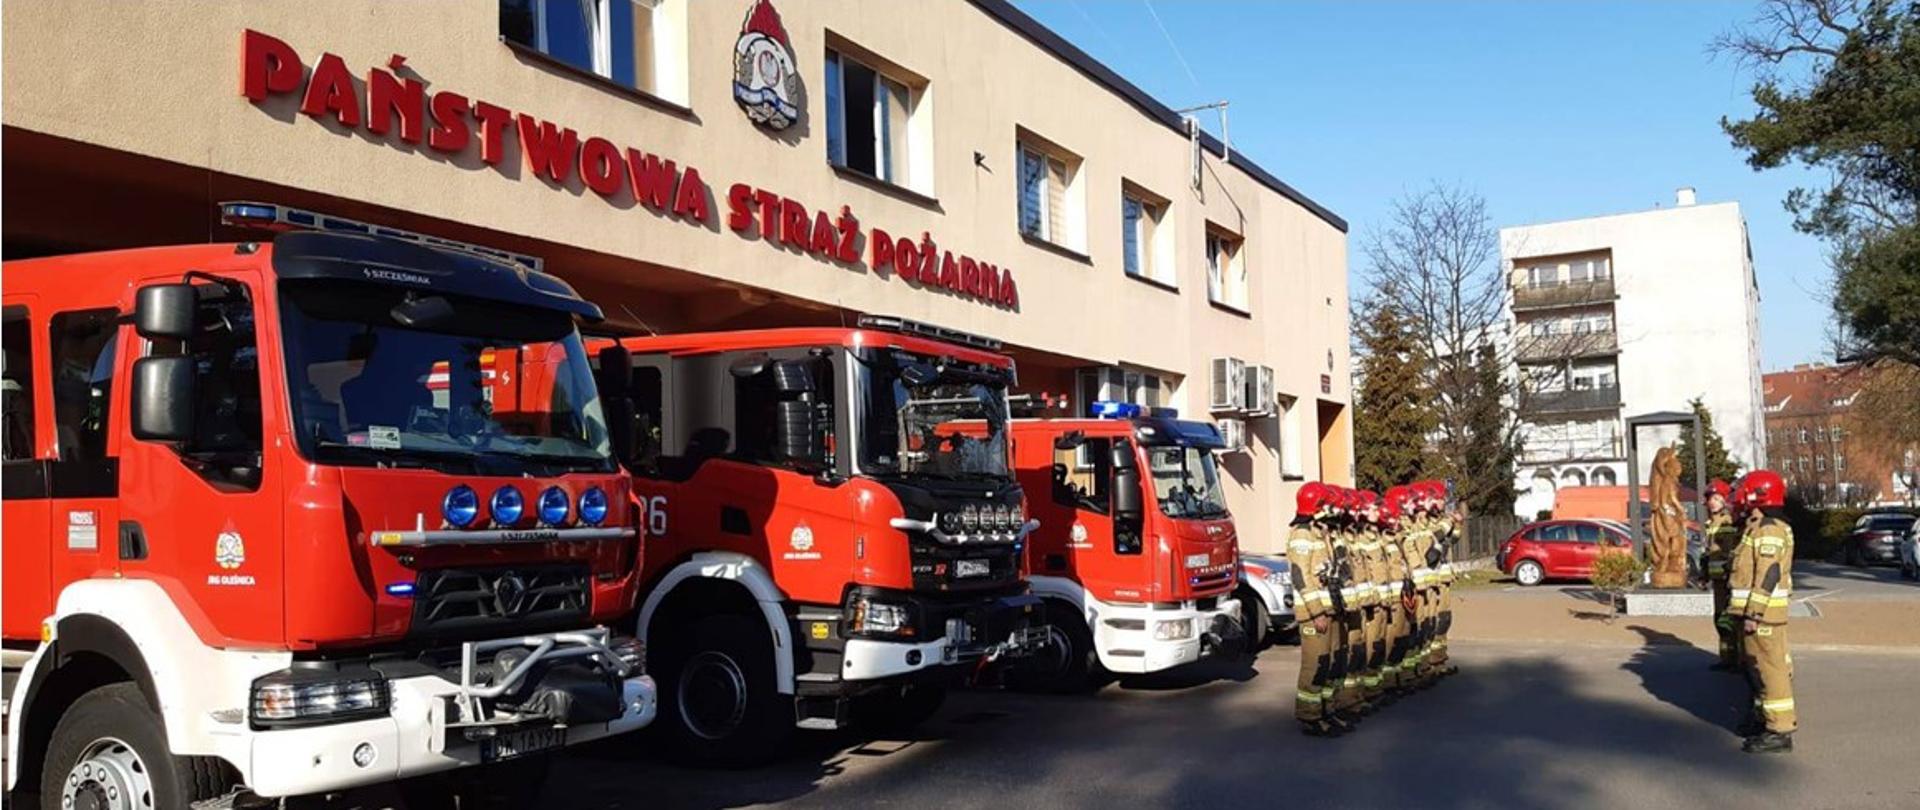 Na zdjęciu widać samochody strażackie oraz strażaków stojących w szeregu na baczność w czasie oddawania hołdu poległym strażakom z Ukrainy. w tle widać figurę świętego Floriana. 